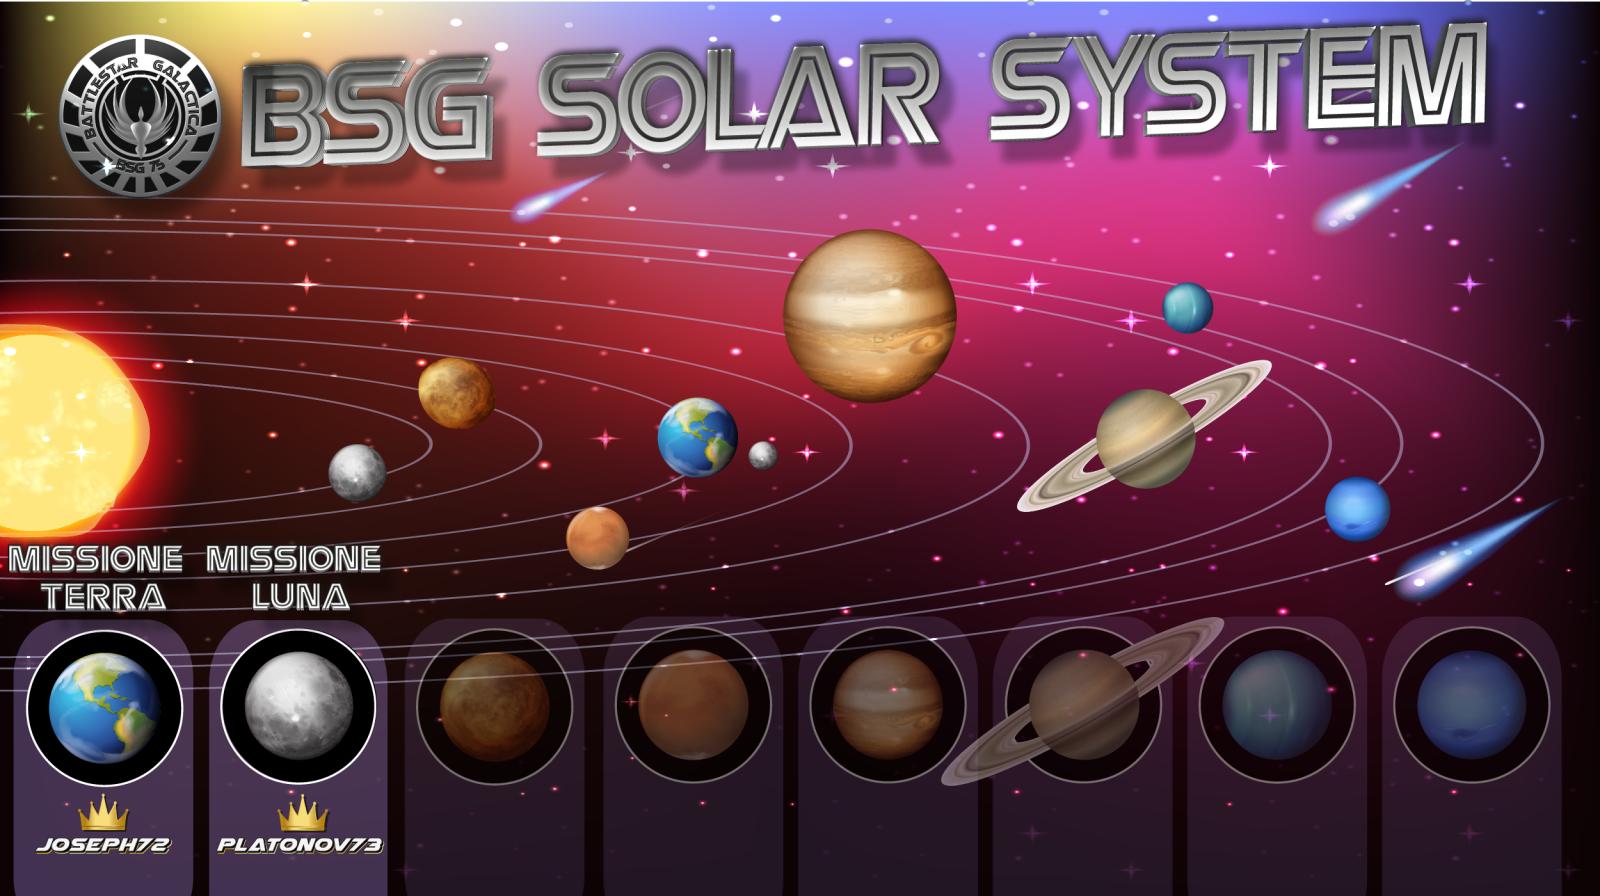 Nome:   BSG SOLAR SYSTEM 1-2.jpg
Visite:  330
Grandezza:  152.8 KB